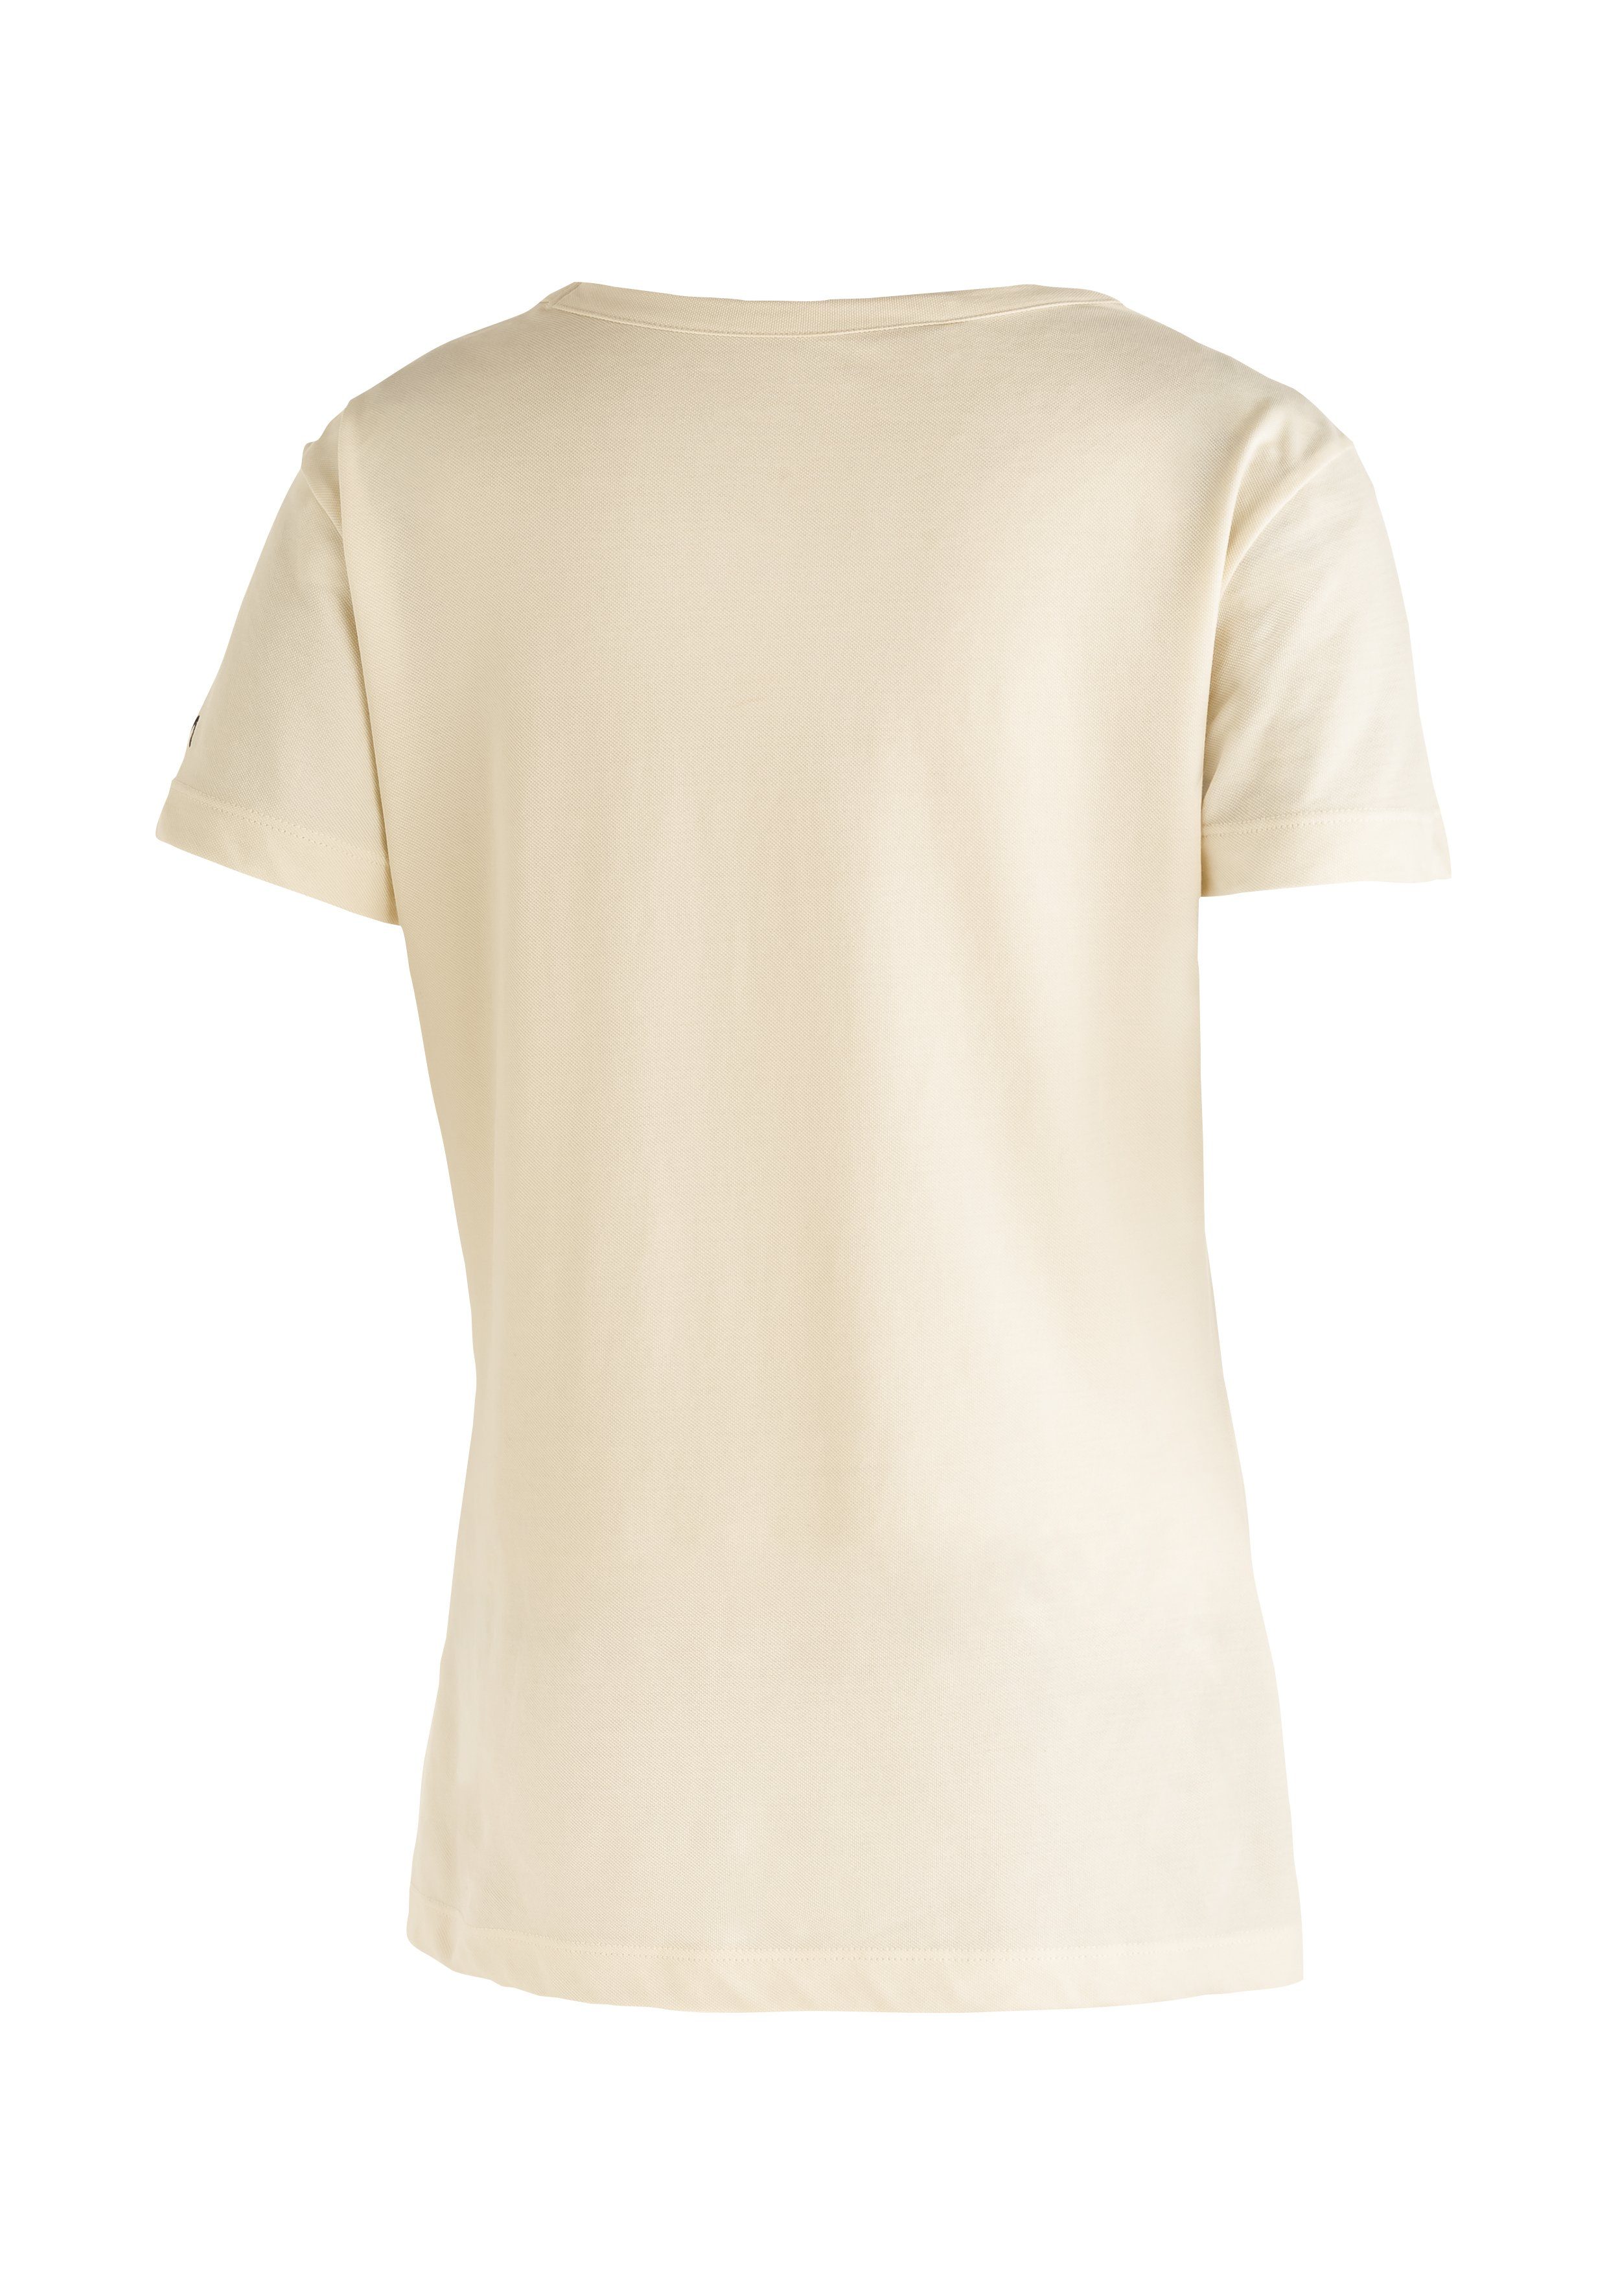 Maier Sports T-shirt Tilia Shirt W